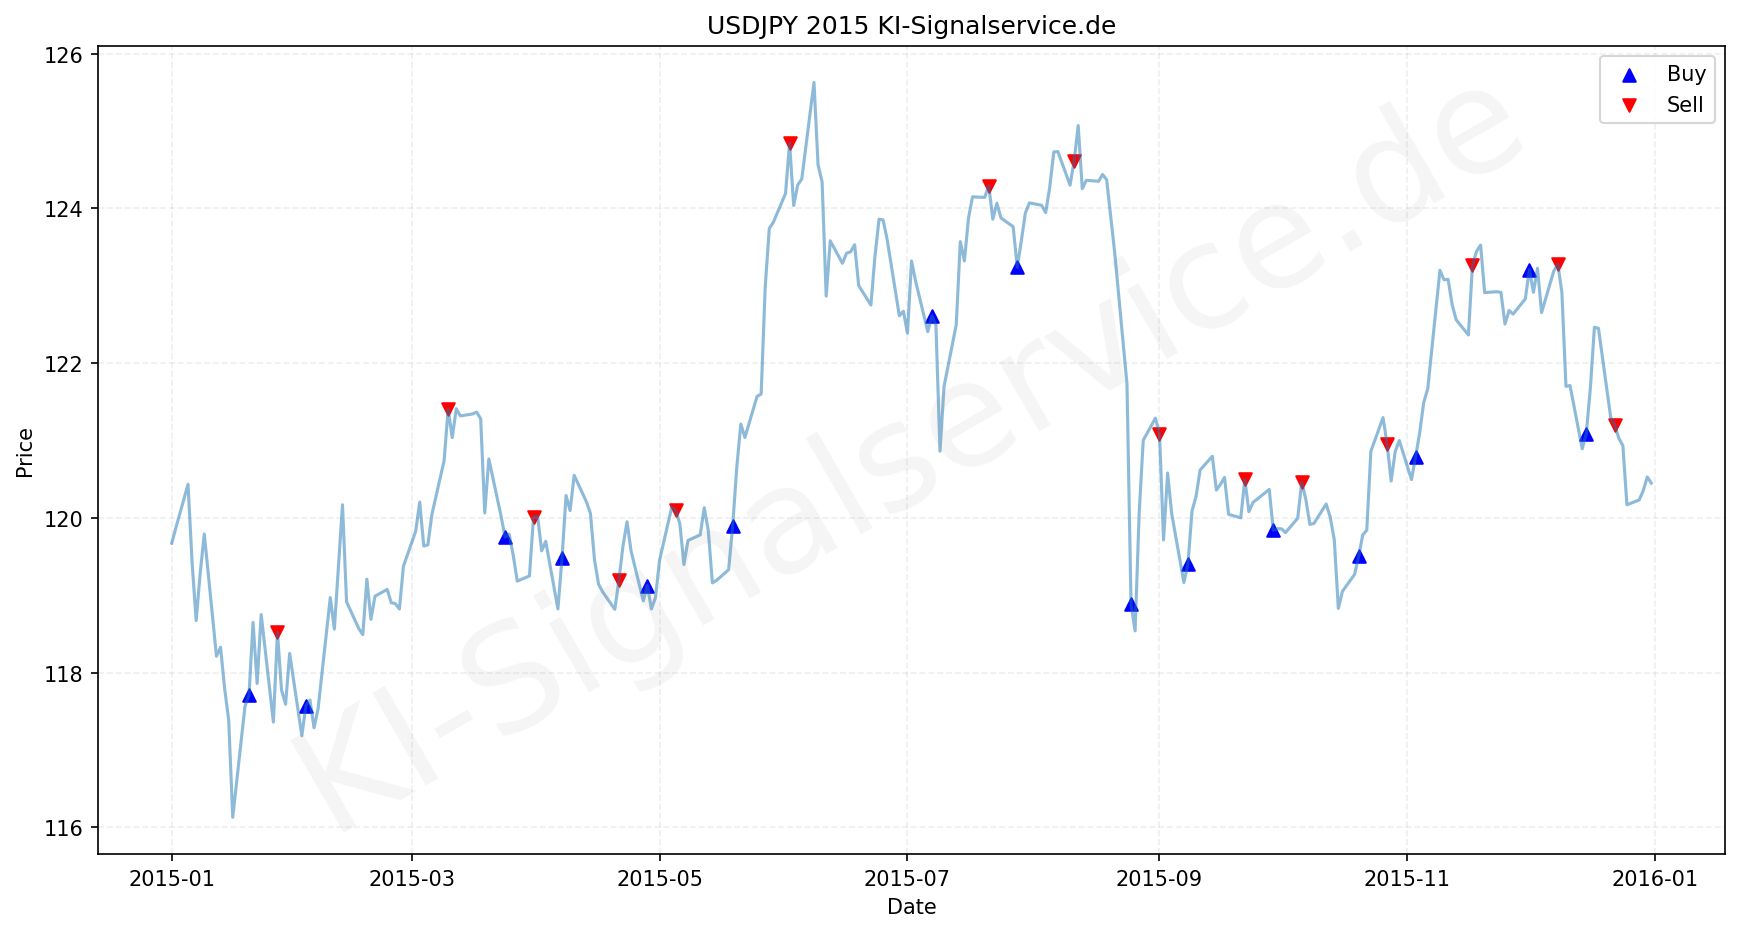 USDJPY Chart - KI Tradingsignale 2015